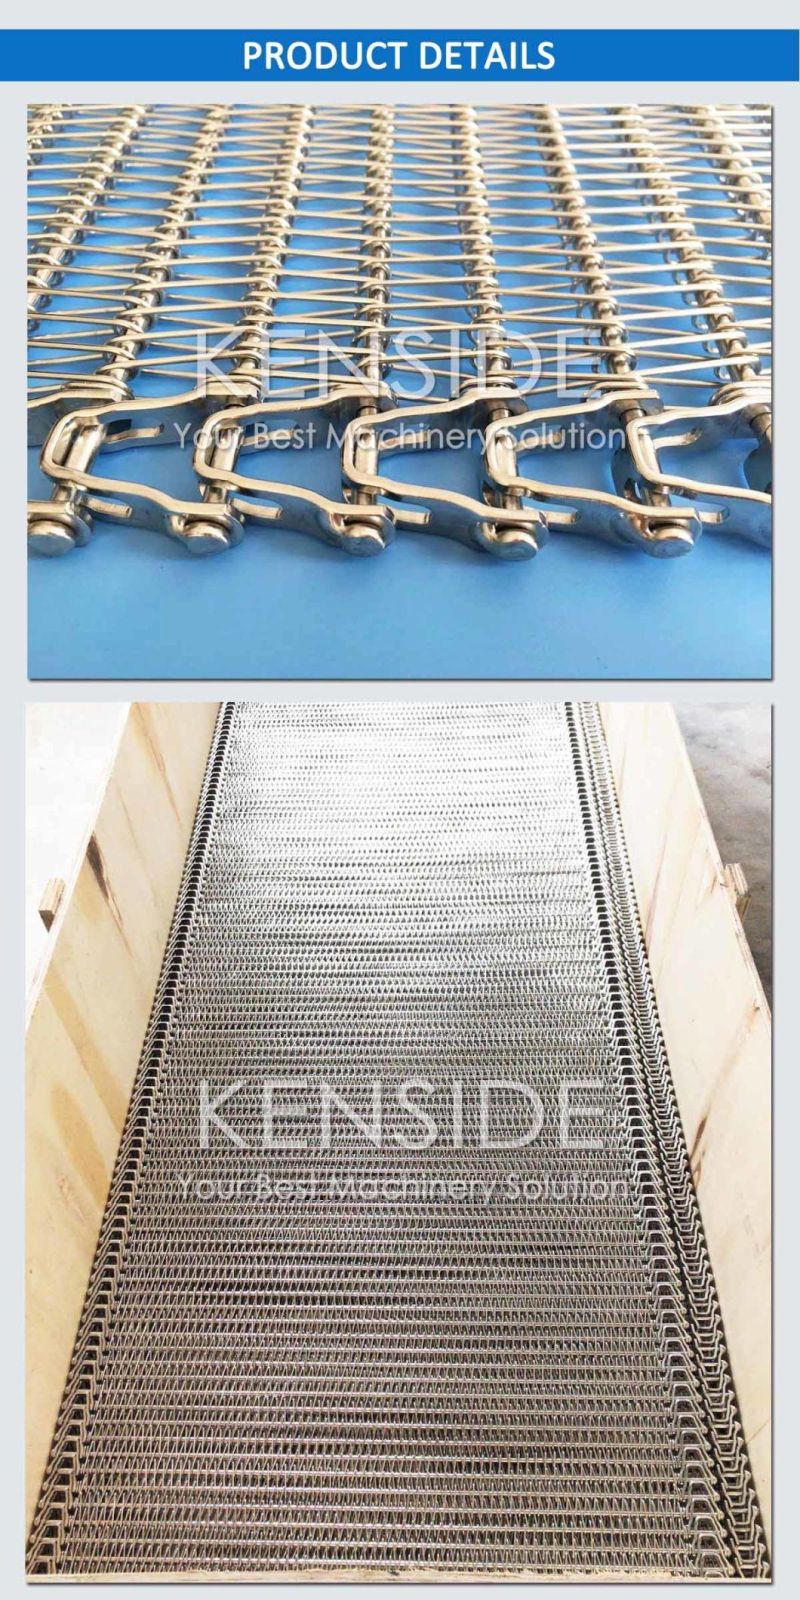 Stainless Steel Belting Spiral Conveyor Belts Reduced Radius Belts for Spiral Freezer, Spiral Cooler, Spiral Proofer, Spiral Cooker